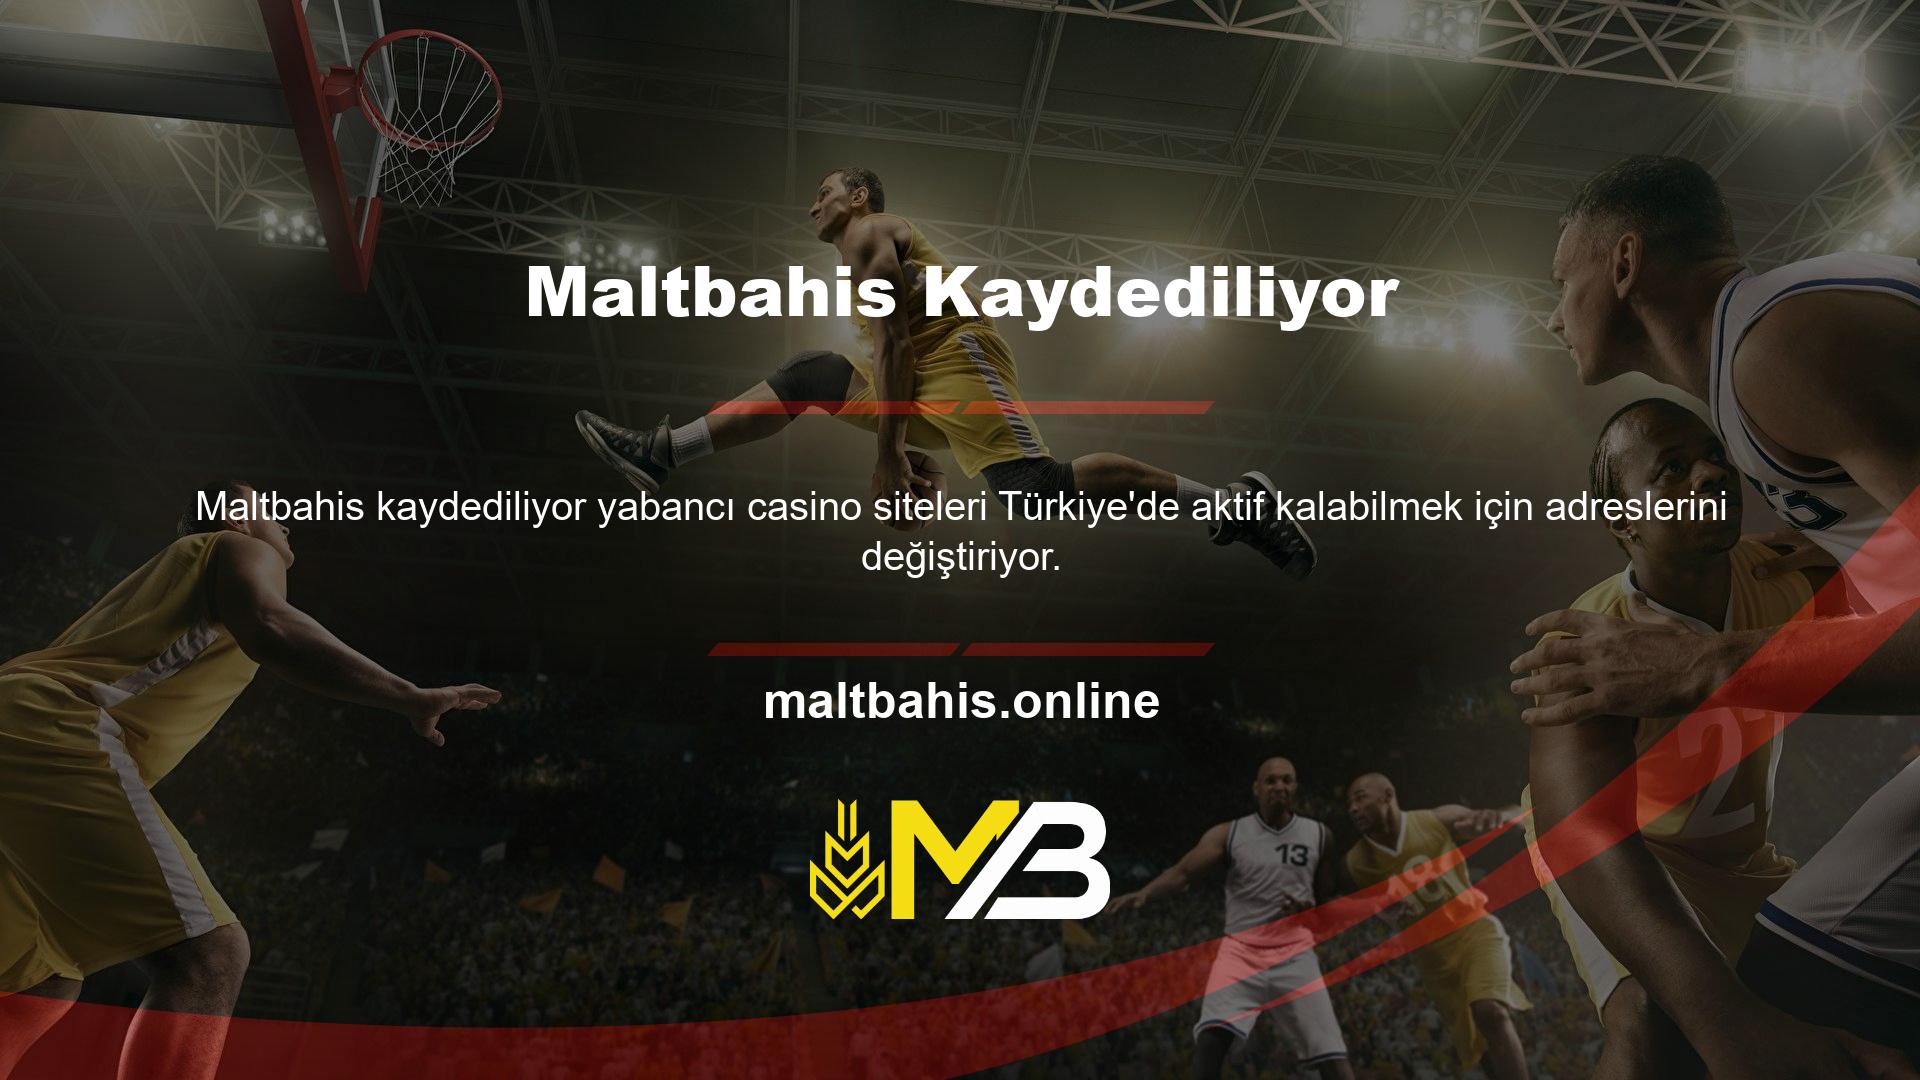 Canlı bahis ve canlı casino oyunları Türkiye’de yasaklı bahis oyunları arasındadır